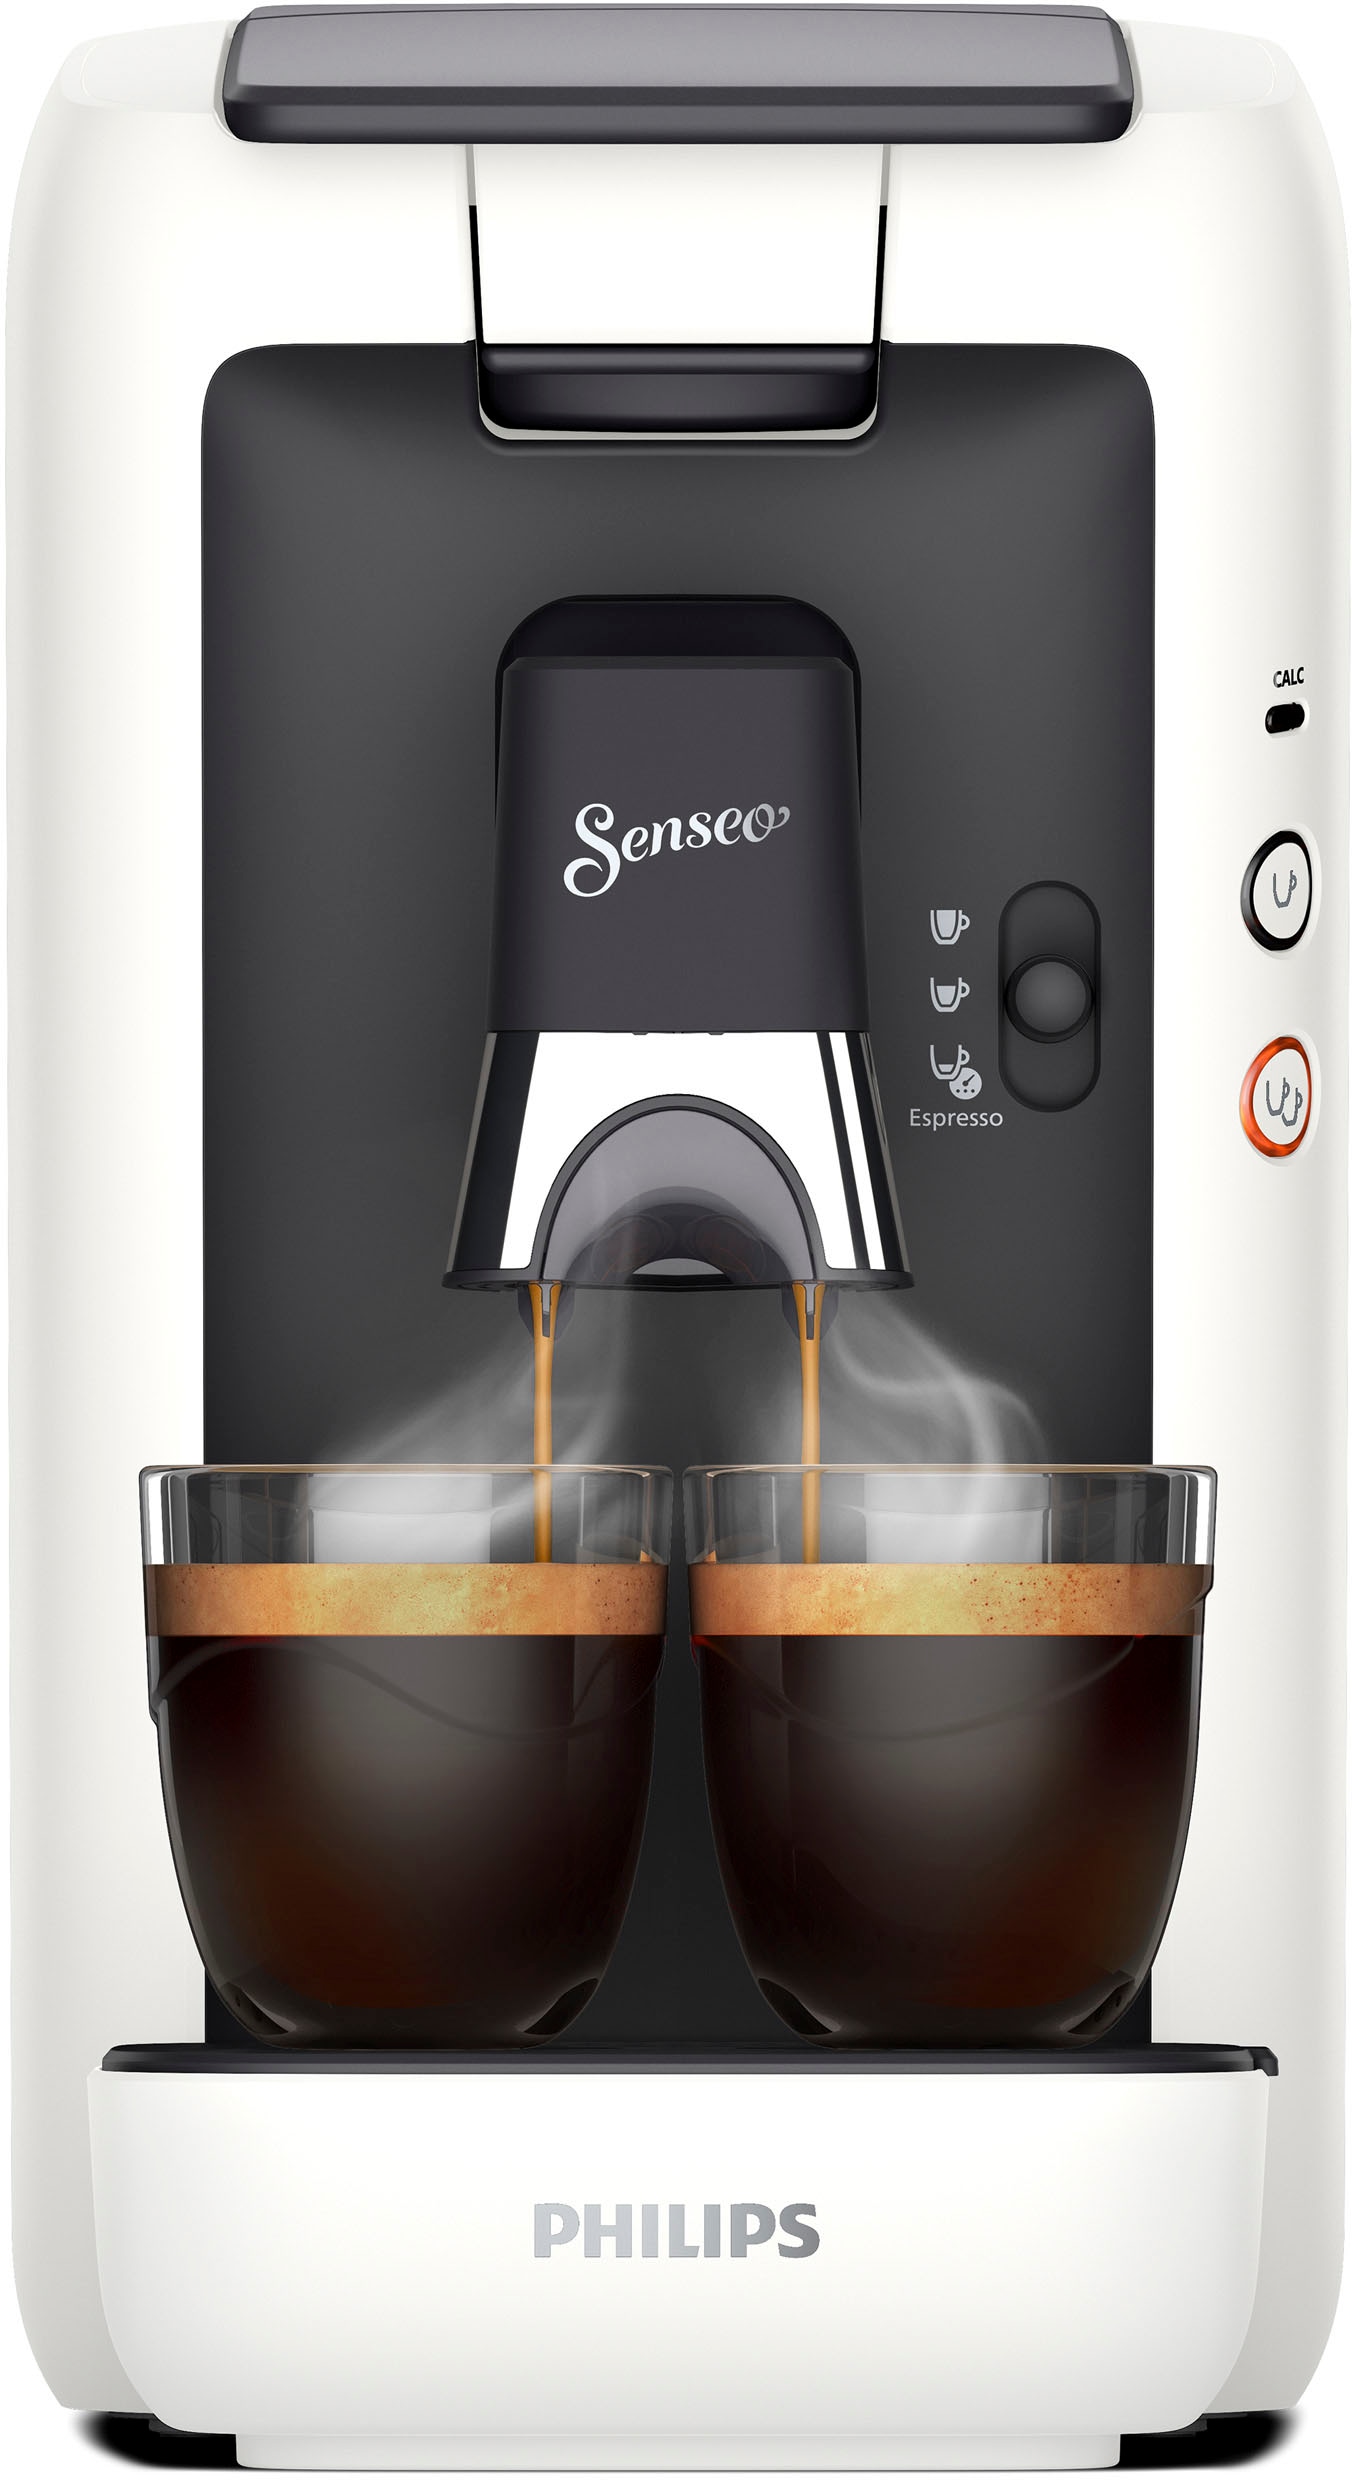 Philips Senseo Kaffeepadmaschine € UVP CSA260/10, 80% kaufen inkl. recyceltem Plastik, Kaffeespezialitäten«, Wert 14,- Memo-Funktion, »Maestro +3 aus Gratis-Zugaben im von